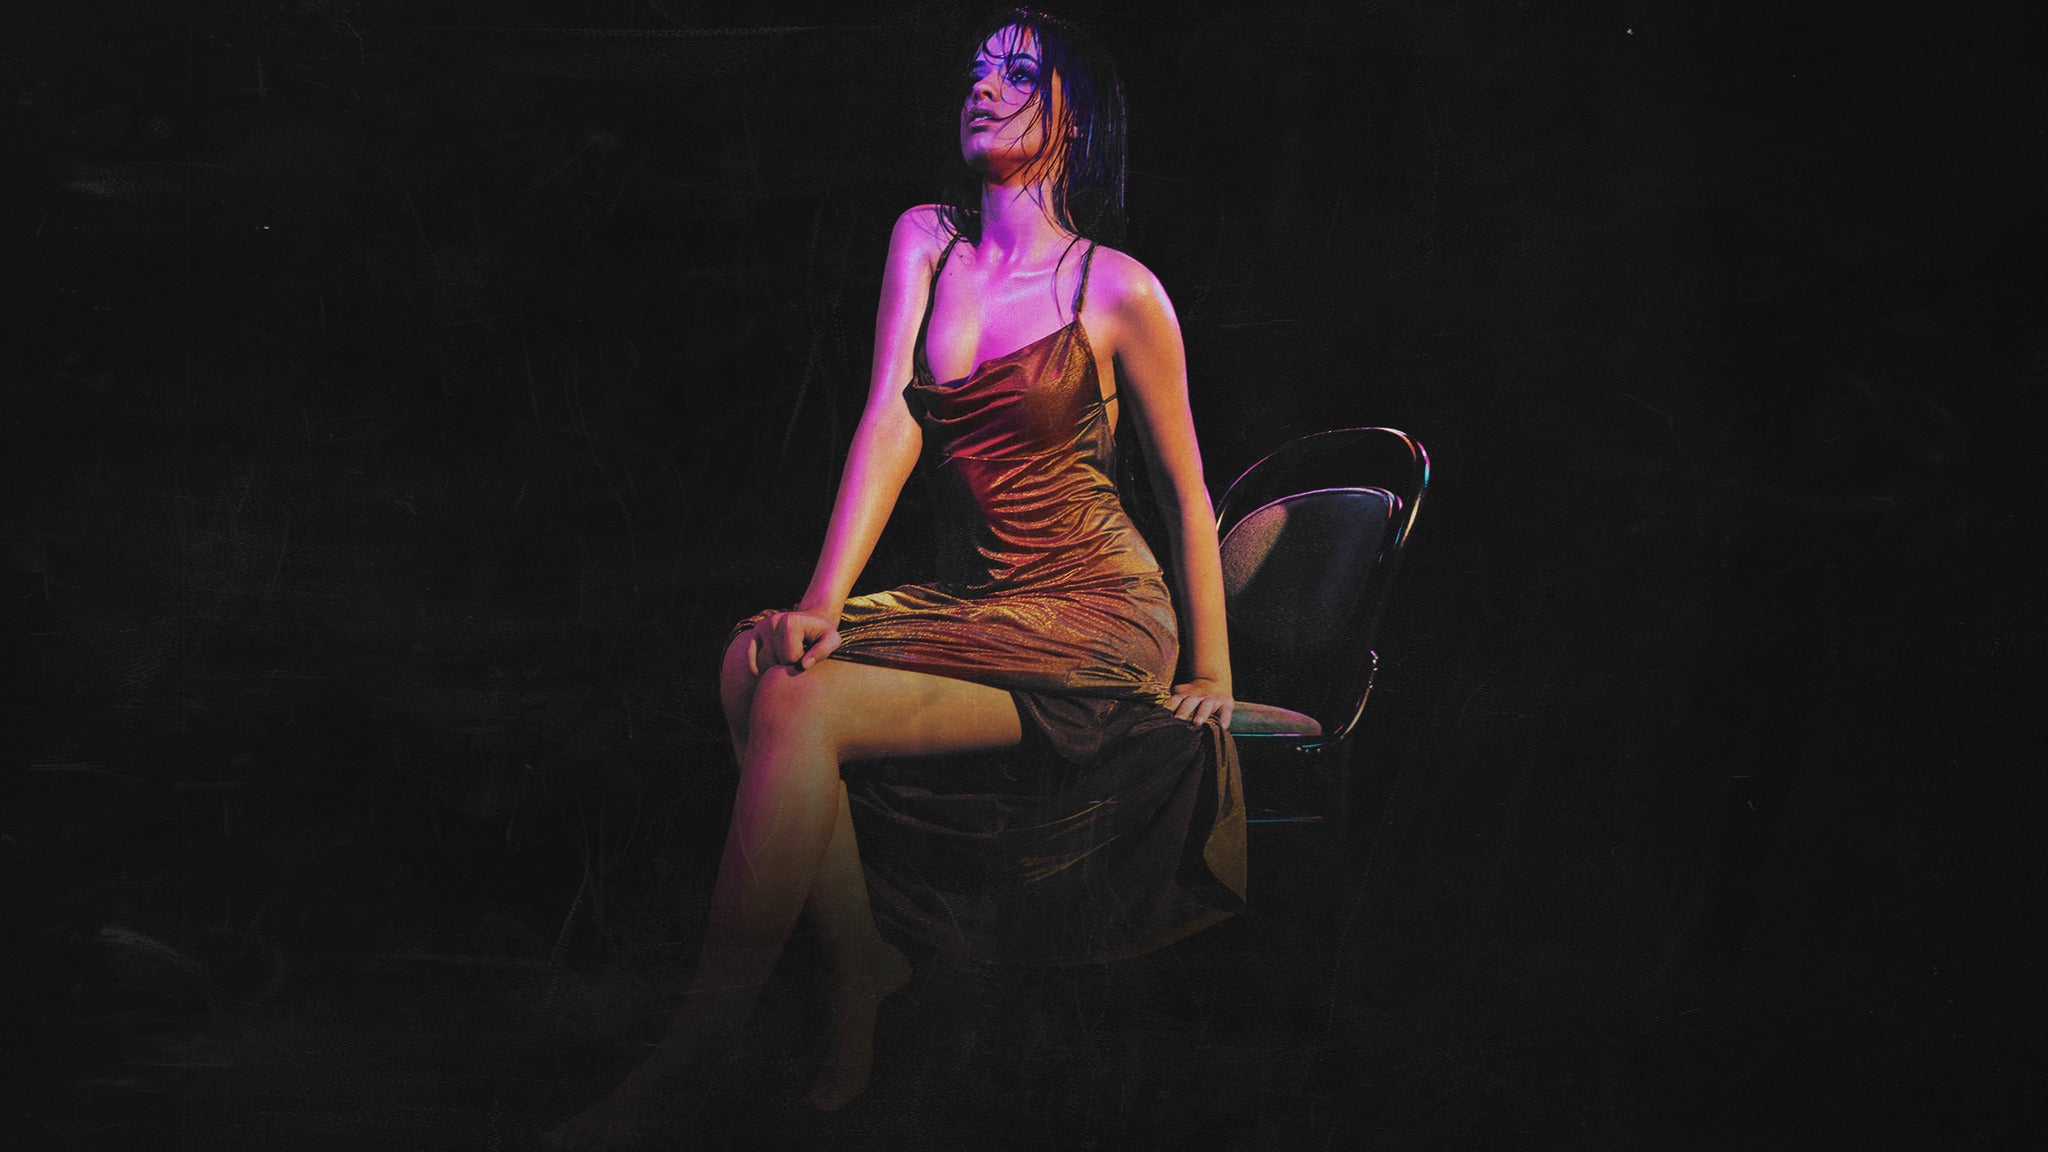 Camila Cabello: The Romance Tour prÃ©sentÃ© par Mastercard in Laval promo photo for Prévente Forfait VIP Package Mastercard presale offer code